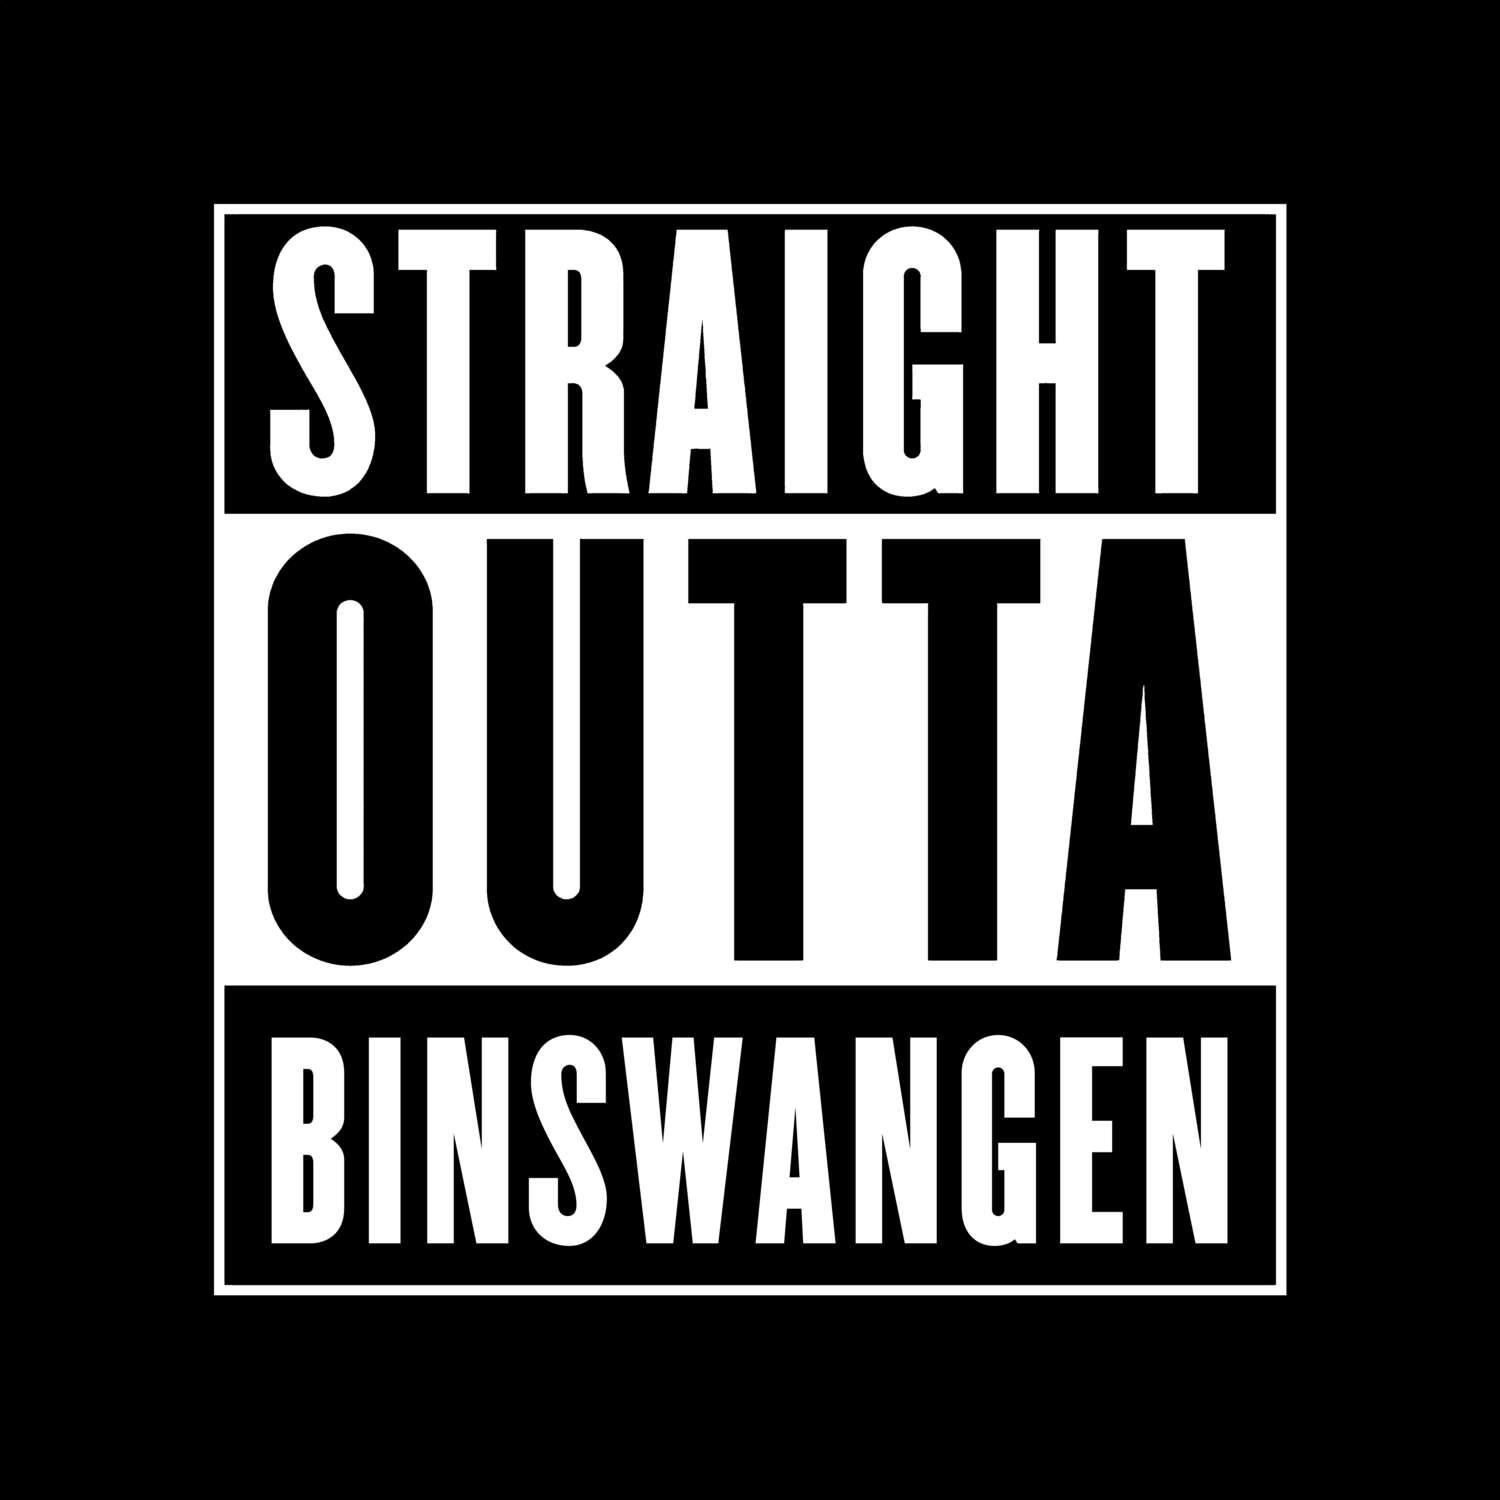 Binswangen T-Shirt »Straight Outta«